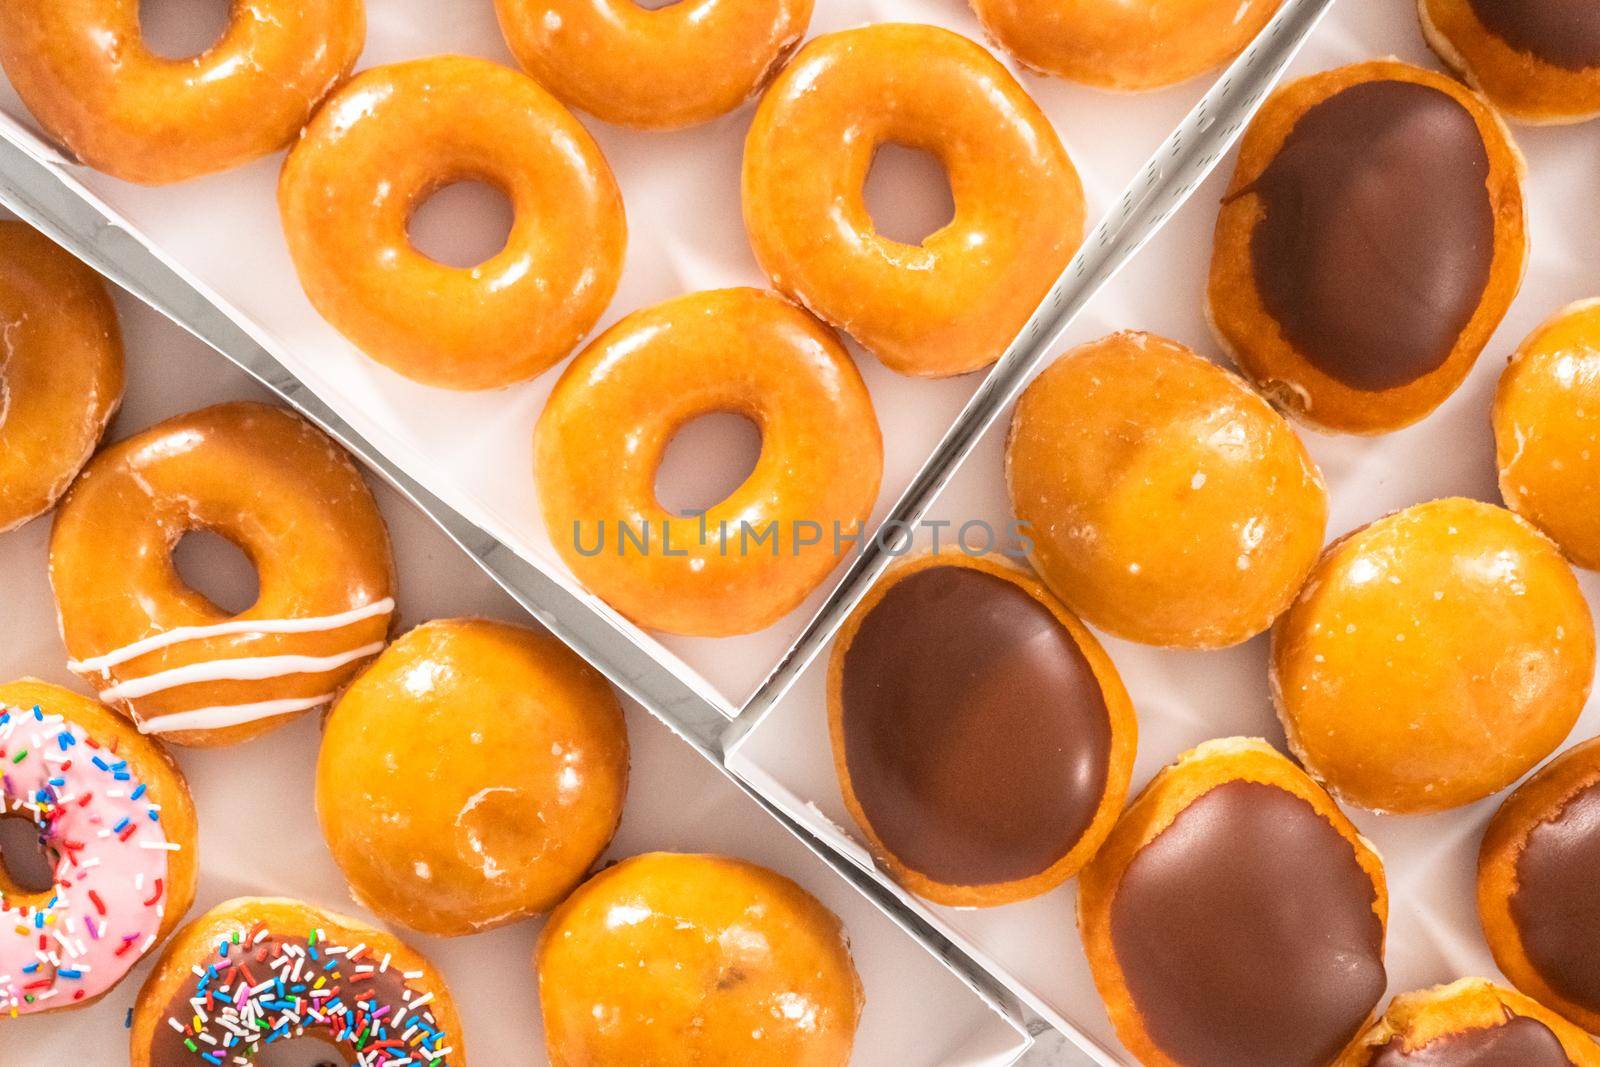 Doughnuts by arinahabich